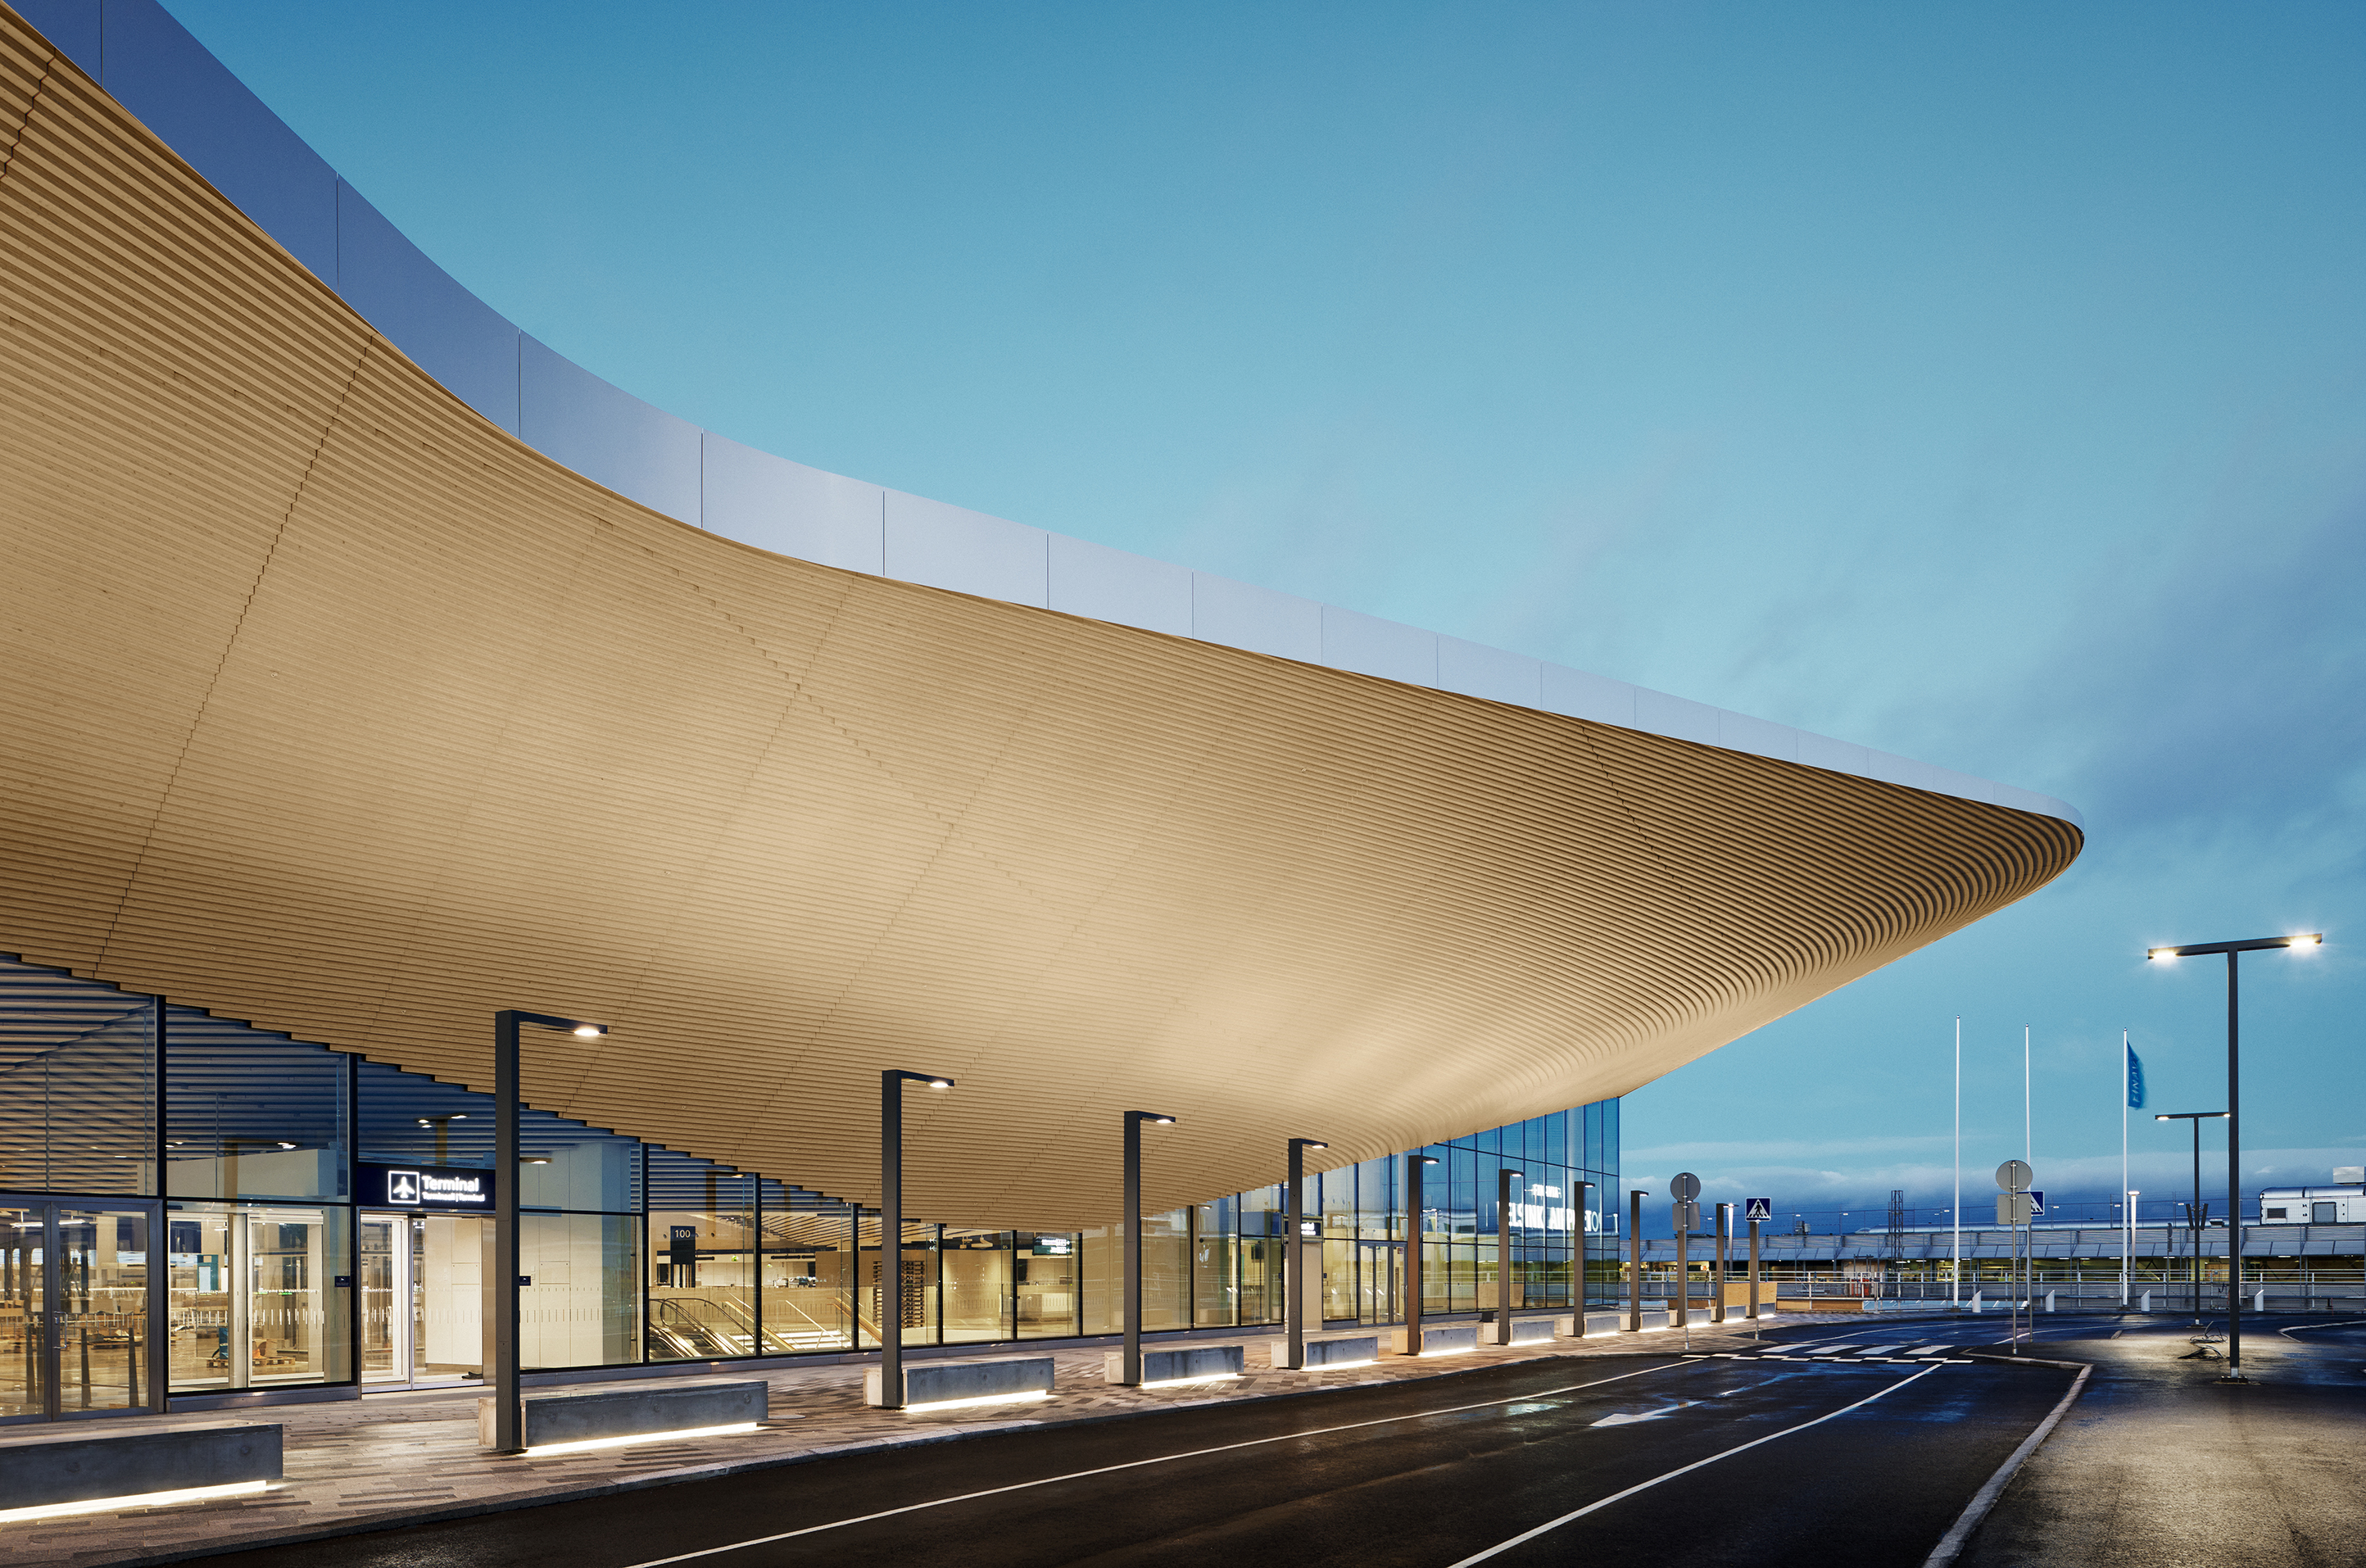 Arrive a building. Аэропорт Хельсинки. Аэропорт Helsinki Sculpture. Проект нового аэропорта в Хельсинки. 6. Центральная библиотека Хельсинки (Ala Architects) Финляндия 2018 г..